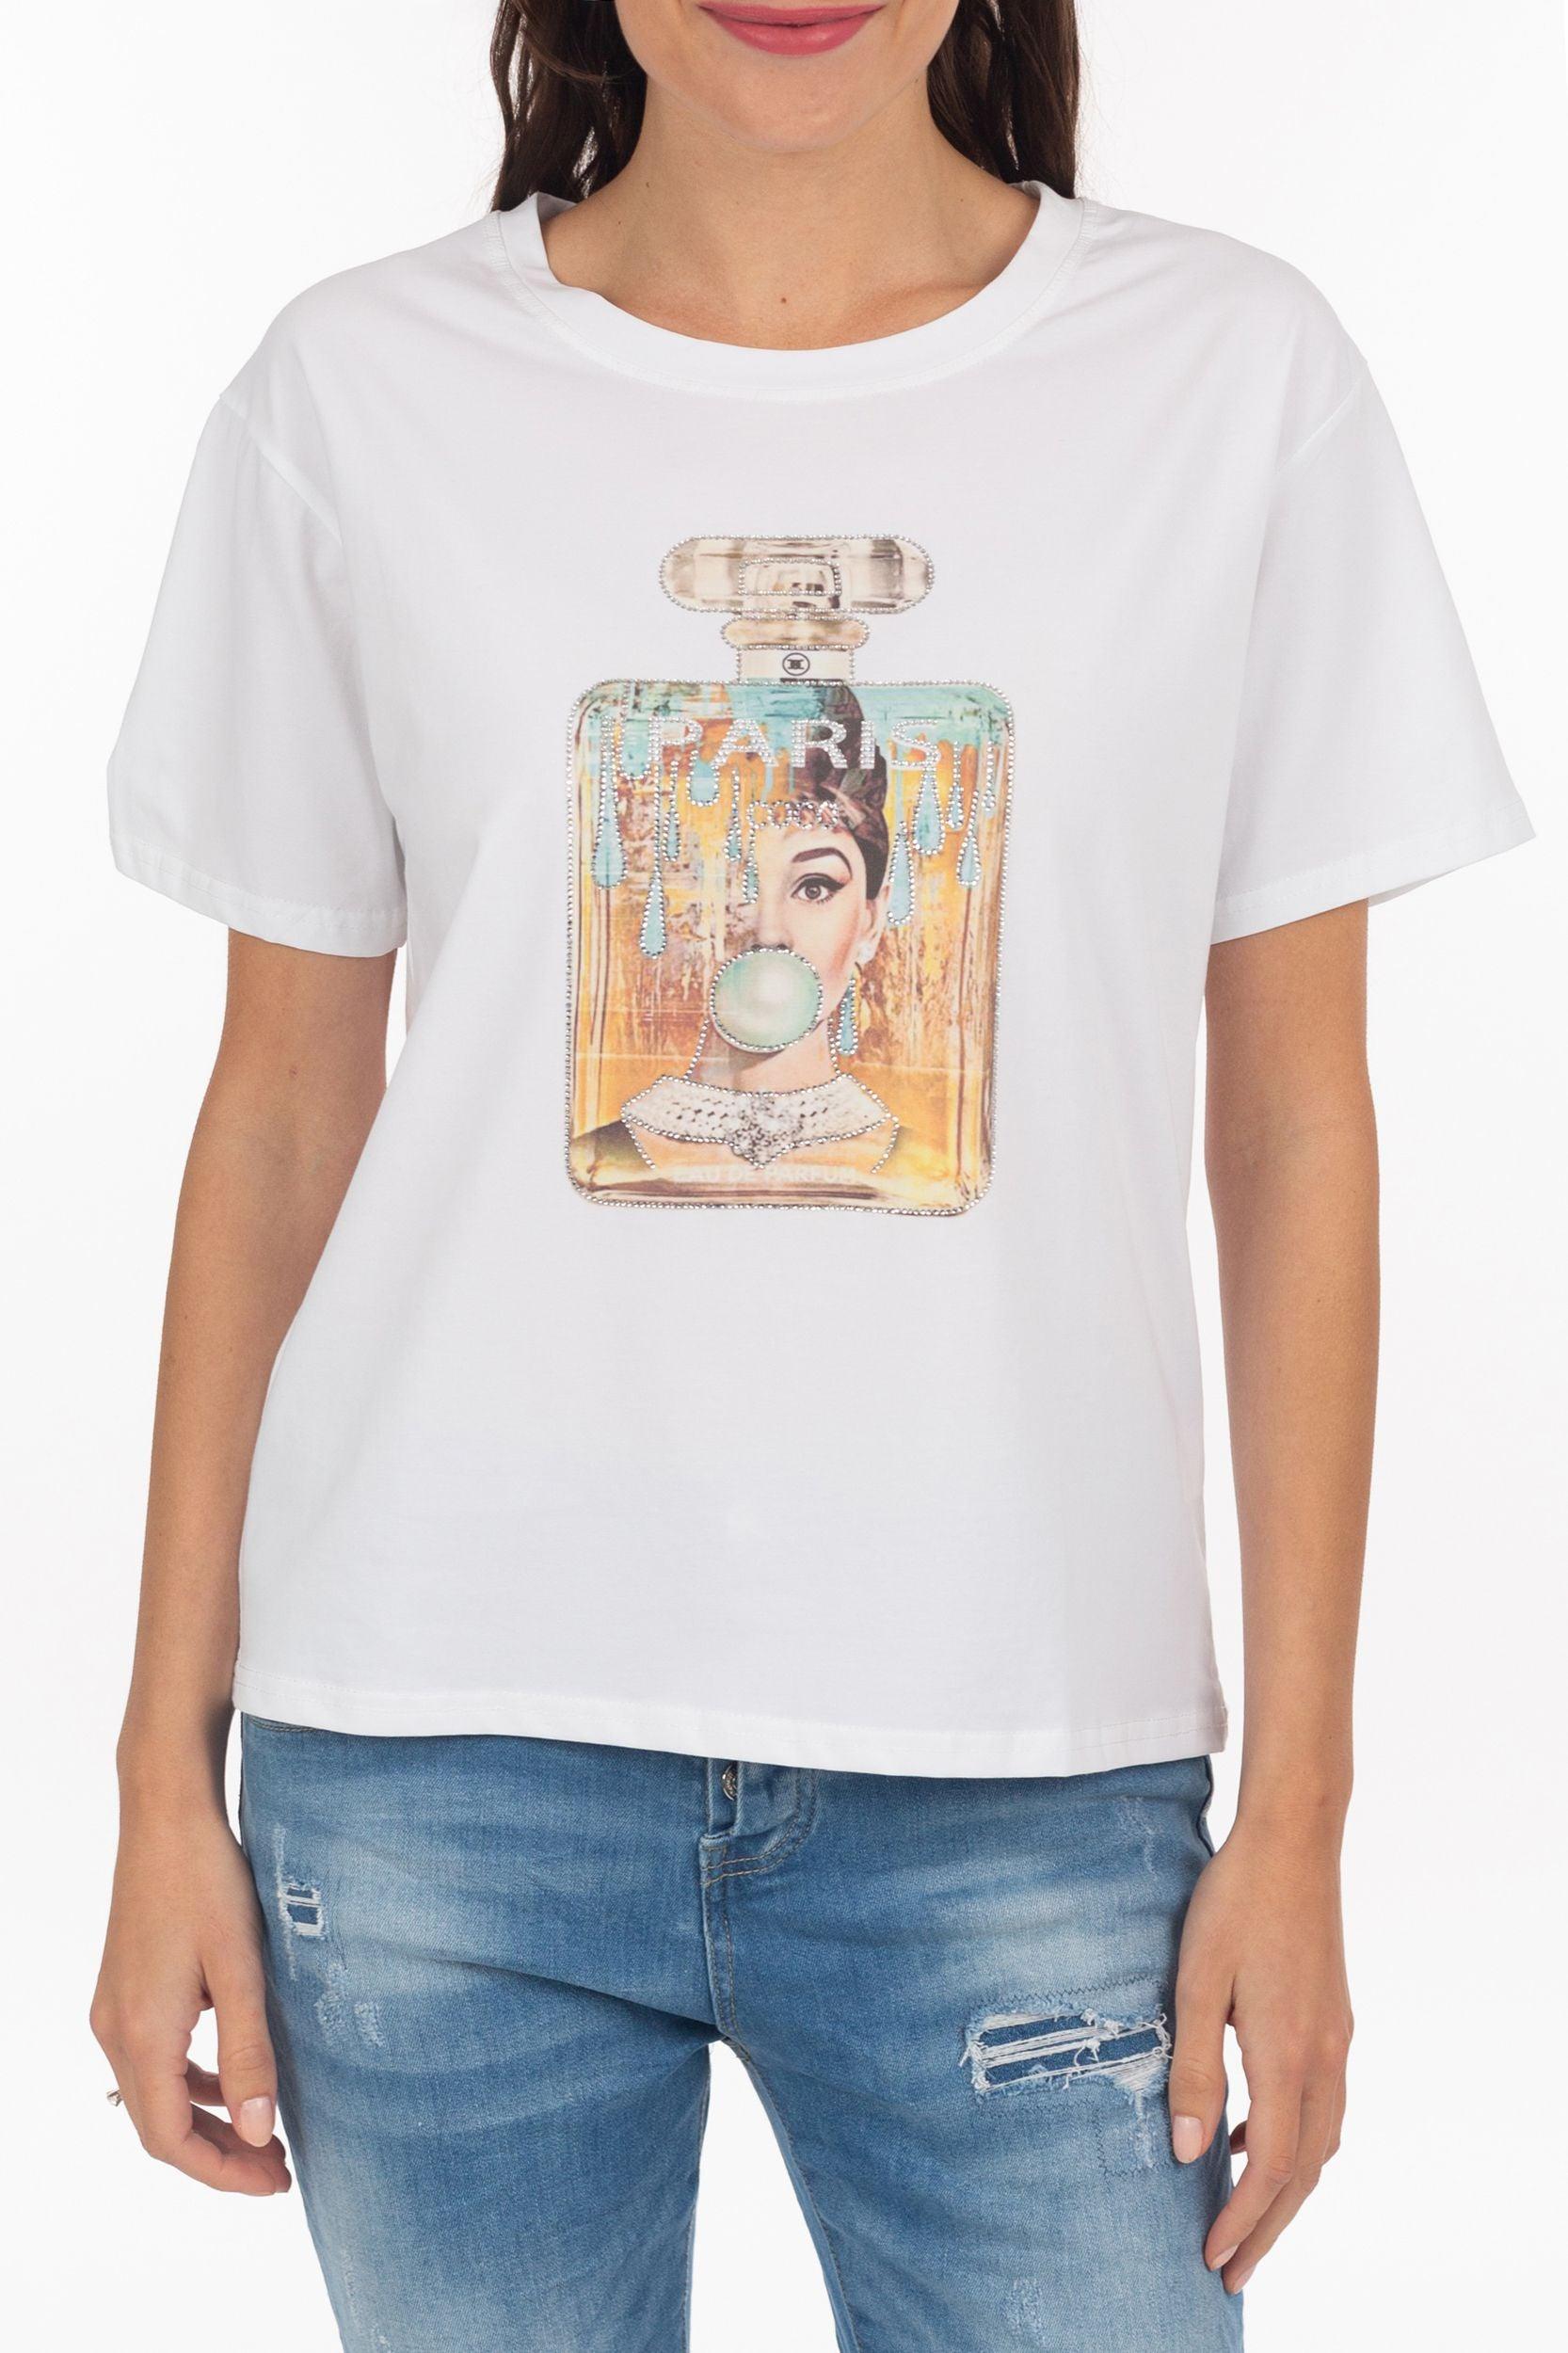 T-Shirt "Audrey Hepburn" - La Strada